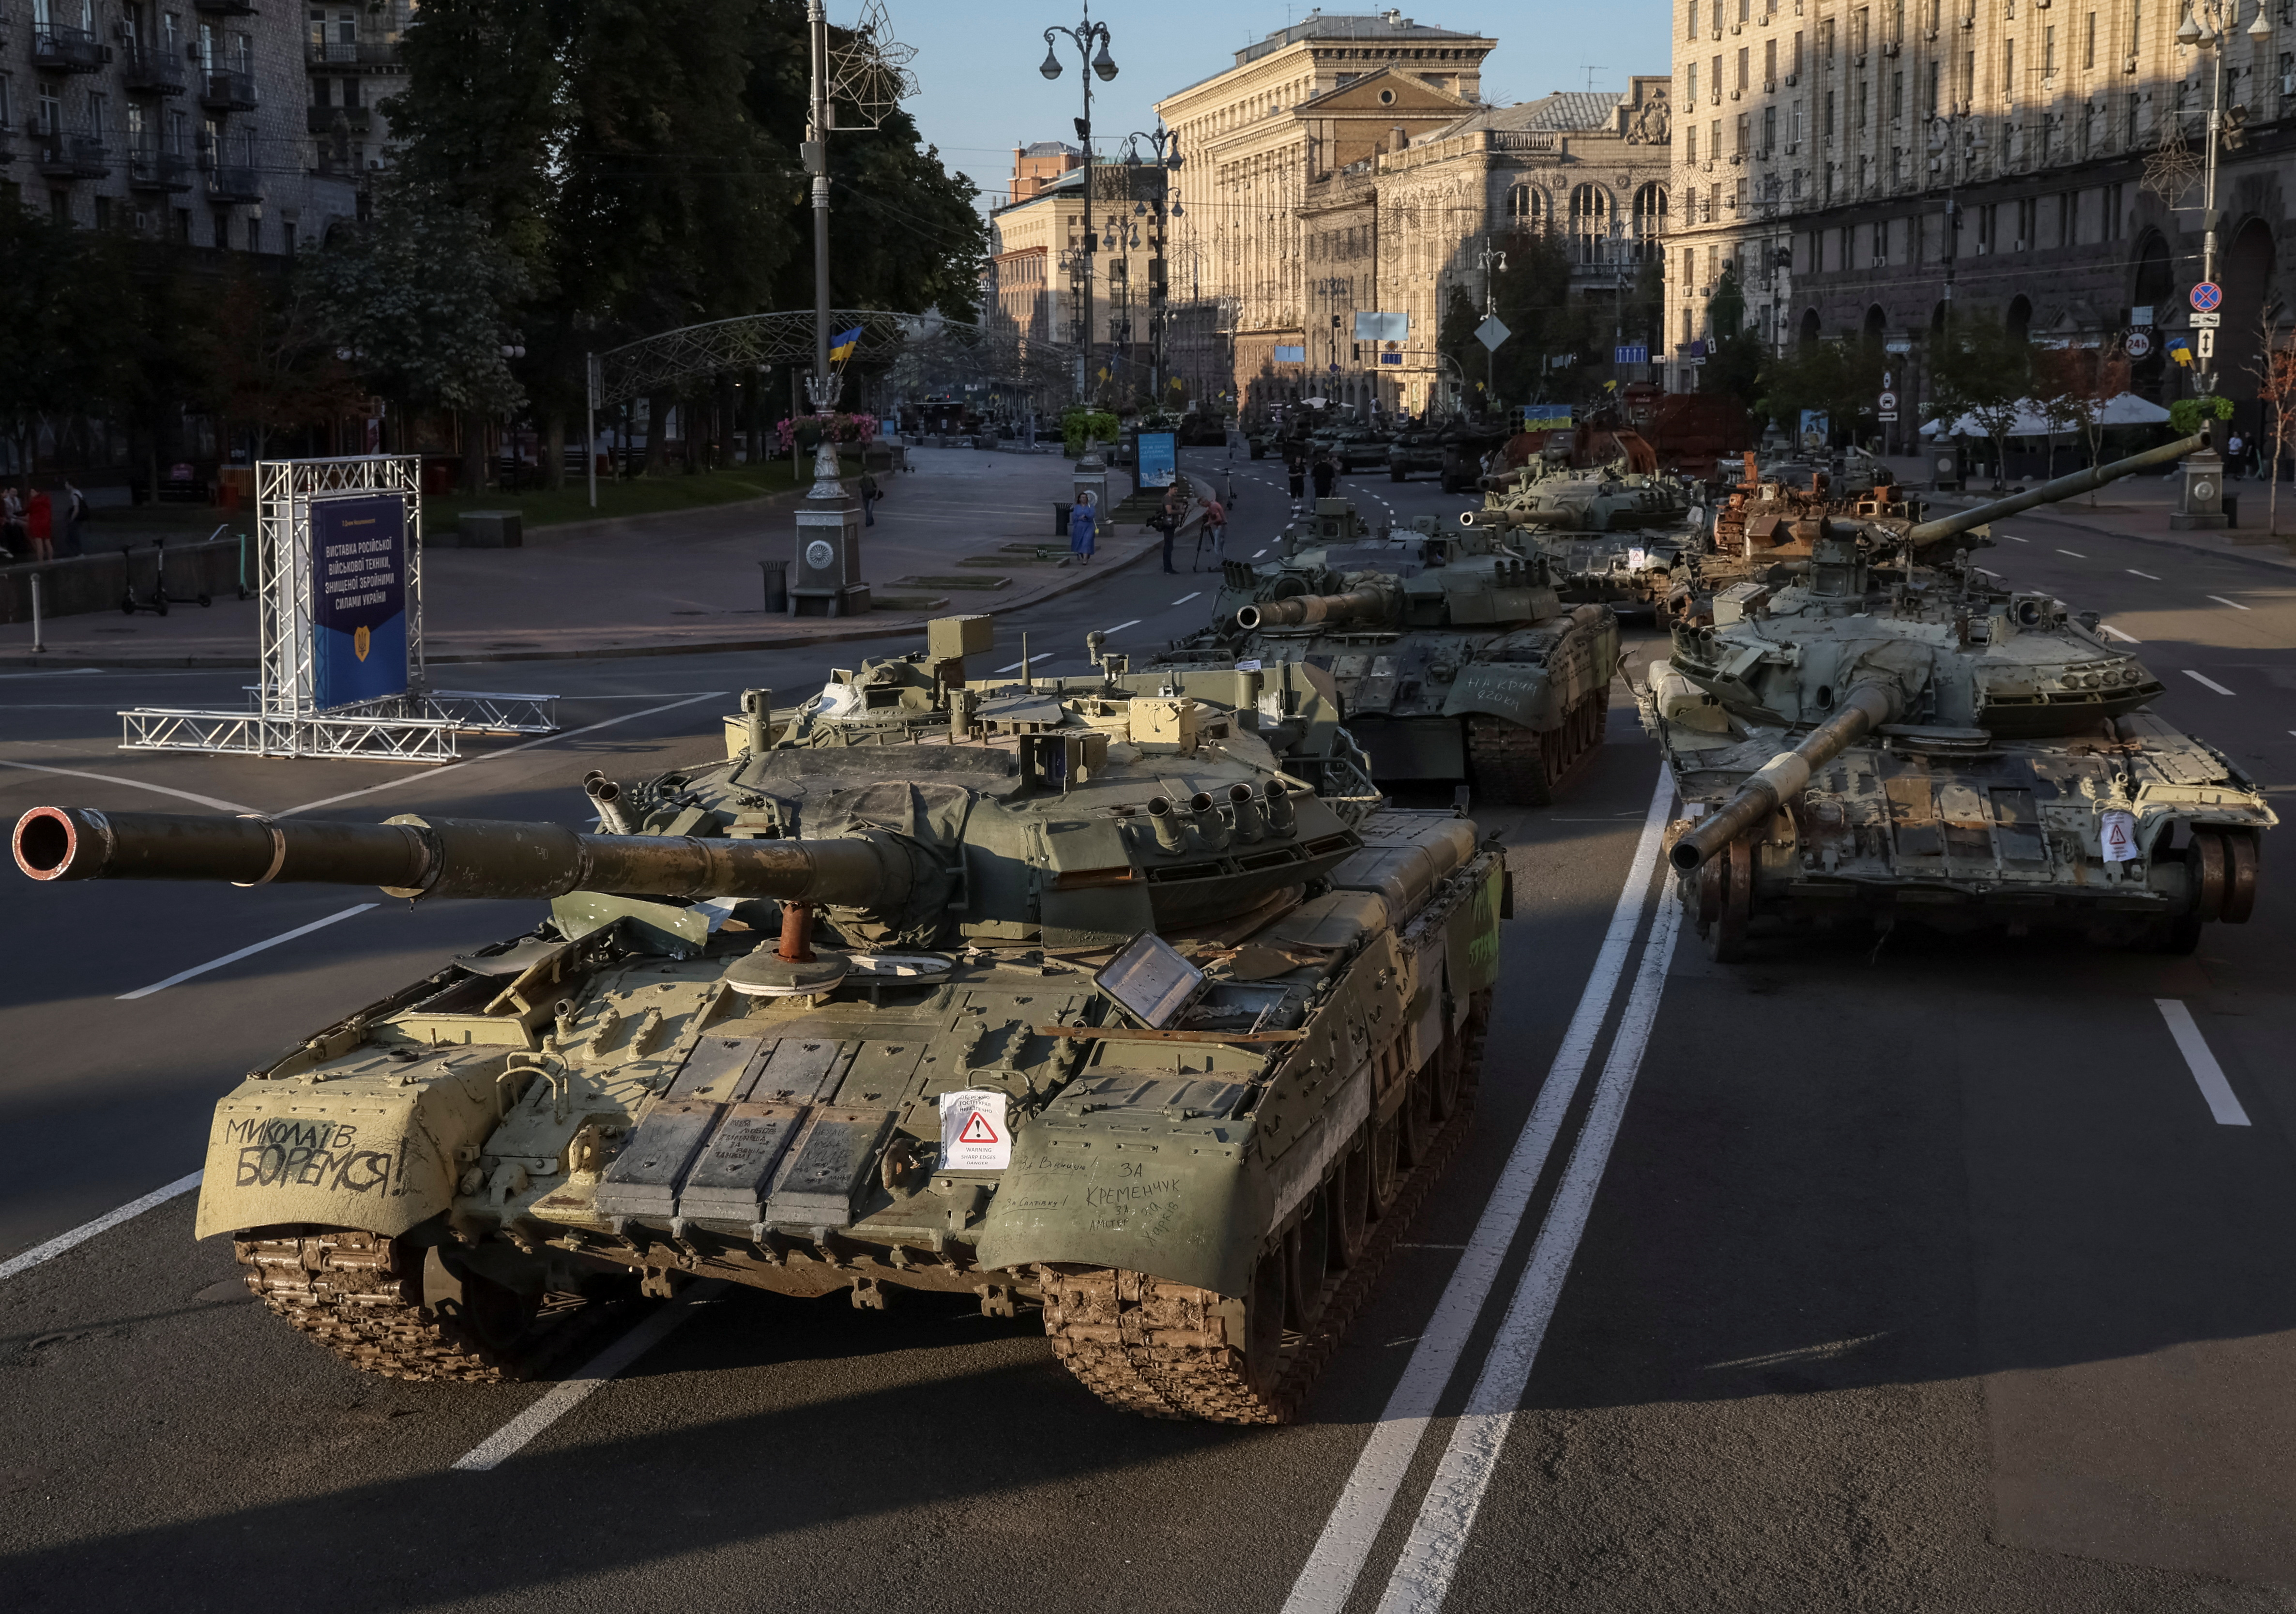 Los vehículos militares rusos destruidos se encuentran en la calle principal Khreshchatyk, en el centro de Kiev, como parte de la celebración del Día de la Independencia de Ucrania, en medio de la invasión de Rusia / Agosto 24, 2022. REUTERS/Gleb Garanich